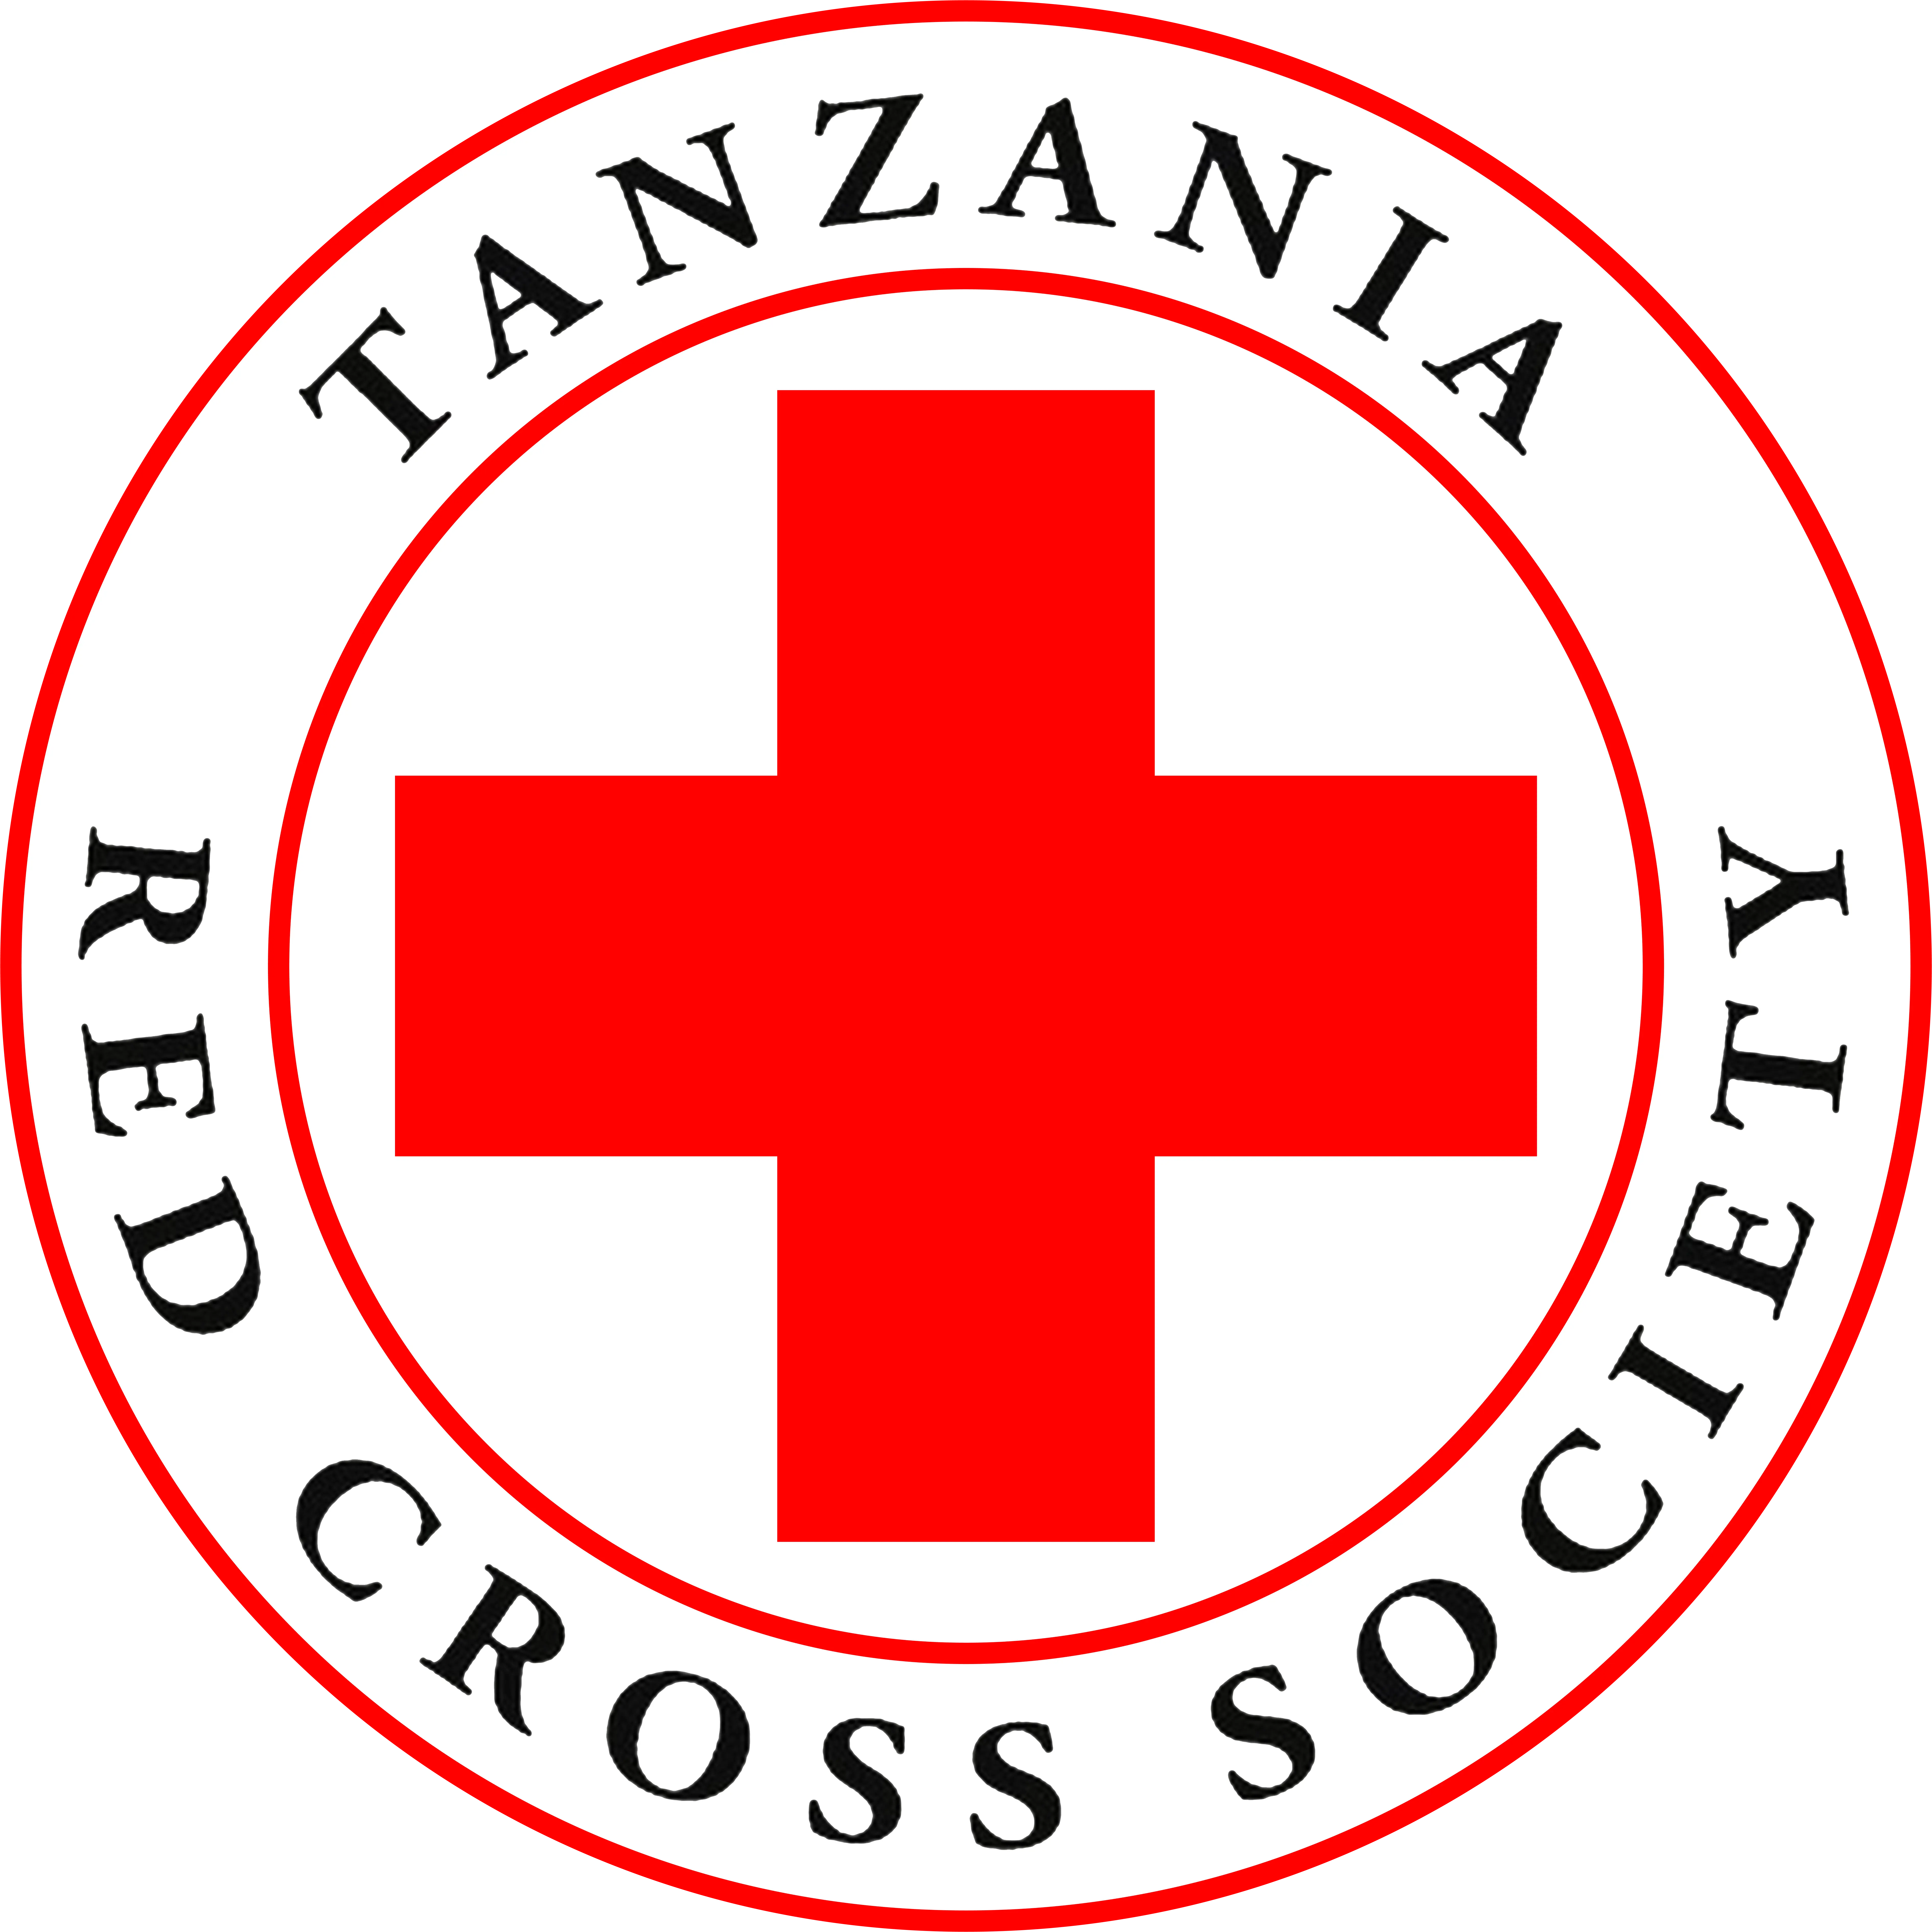 The Red Cross Tanzania